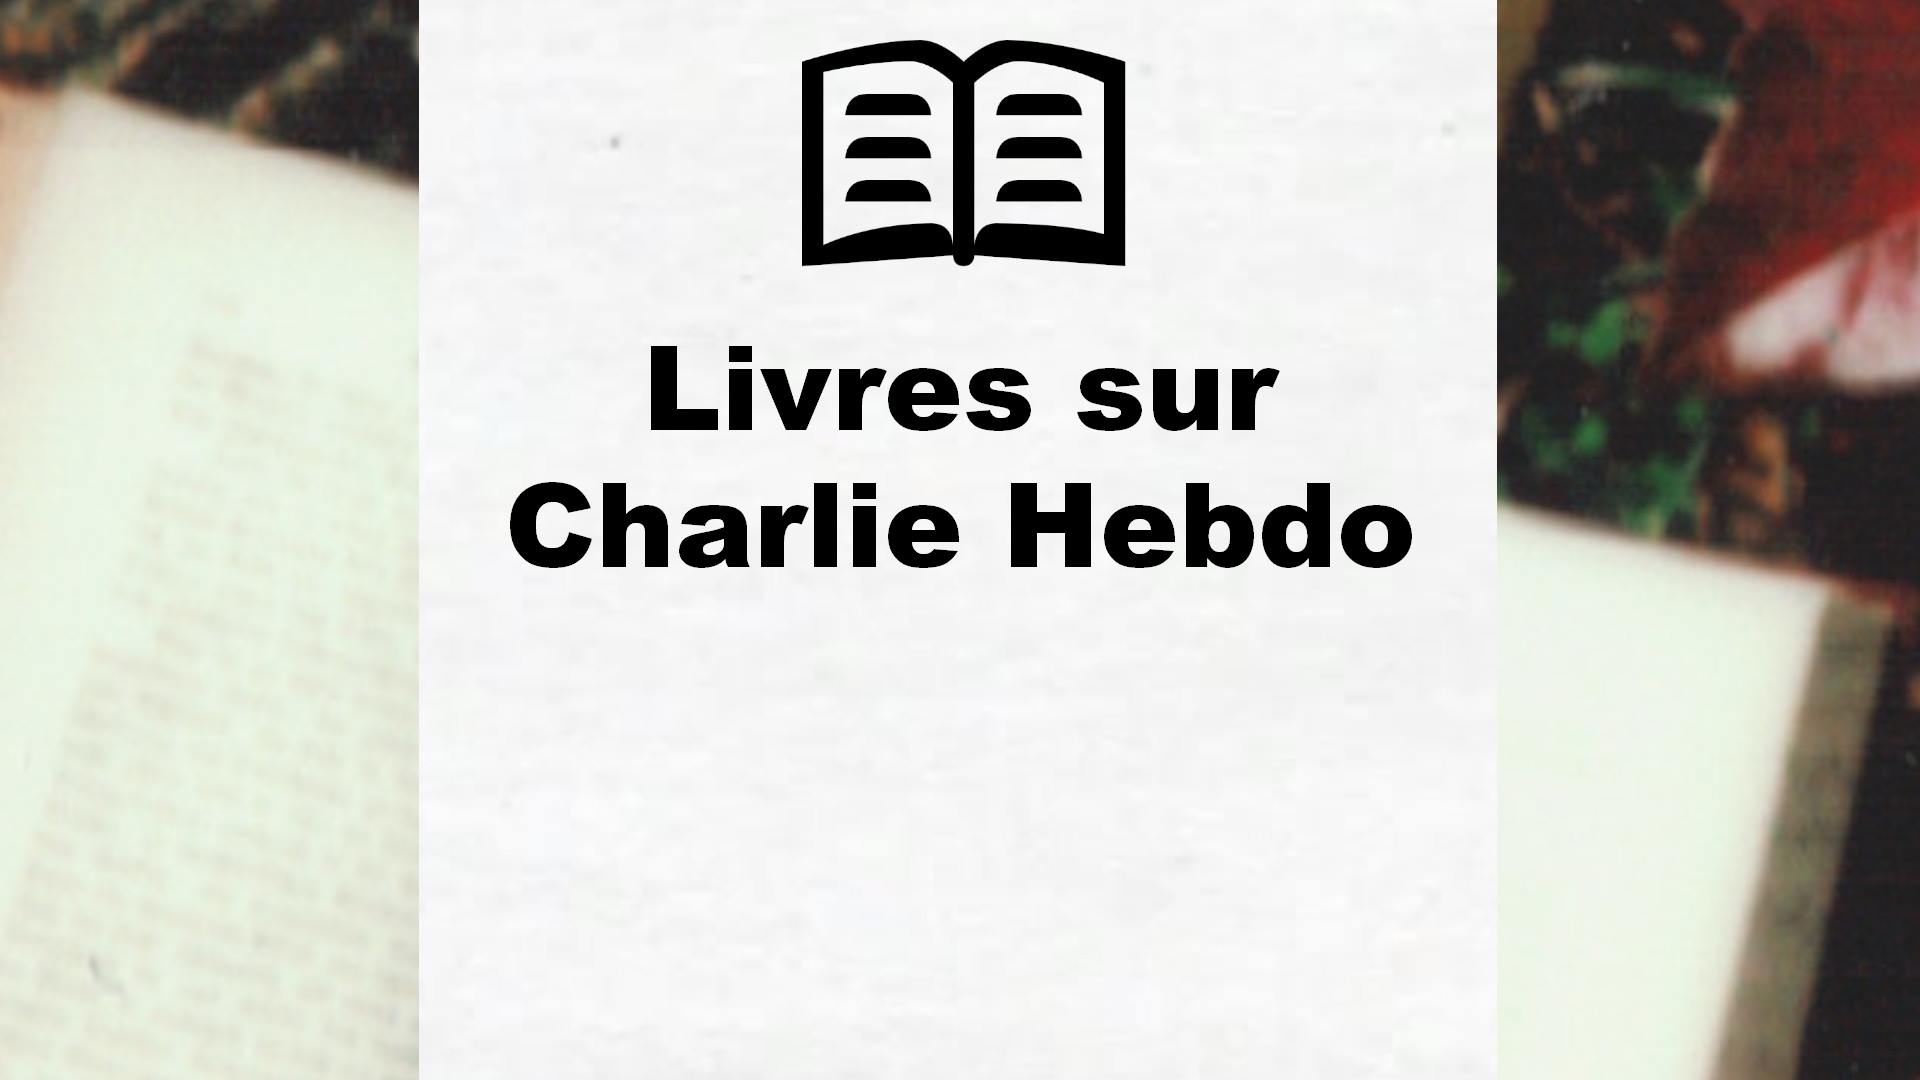 Livres sur Charlie Hebdo